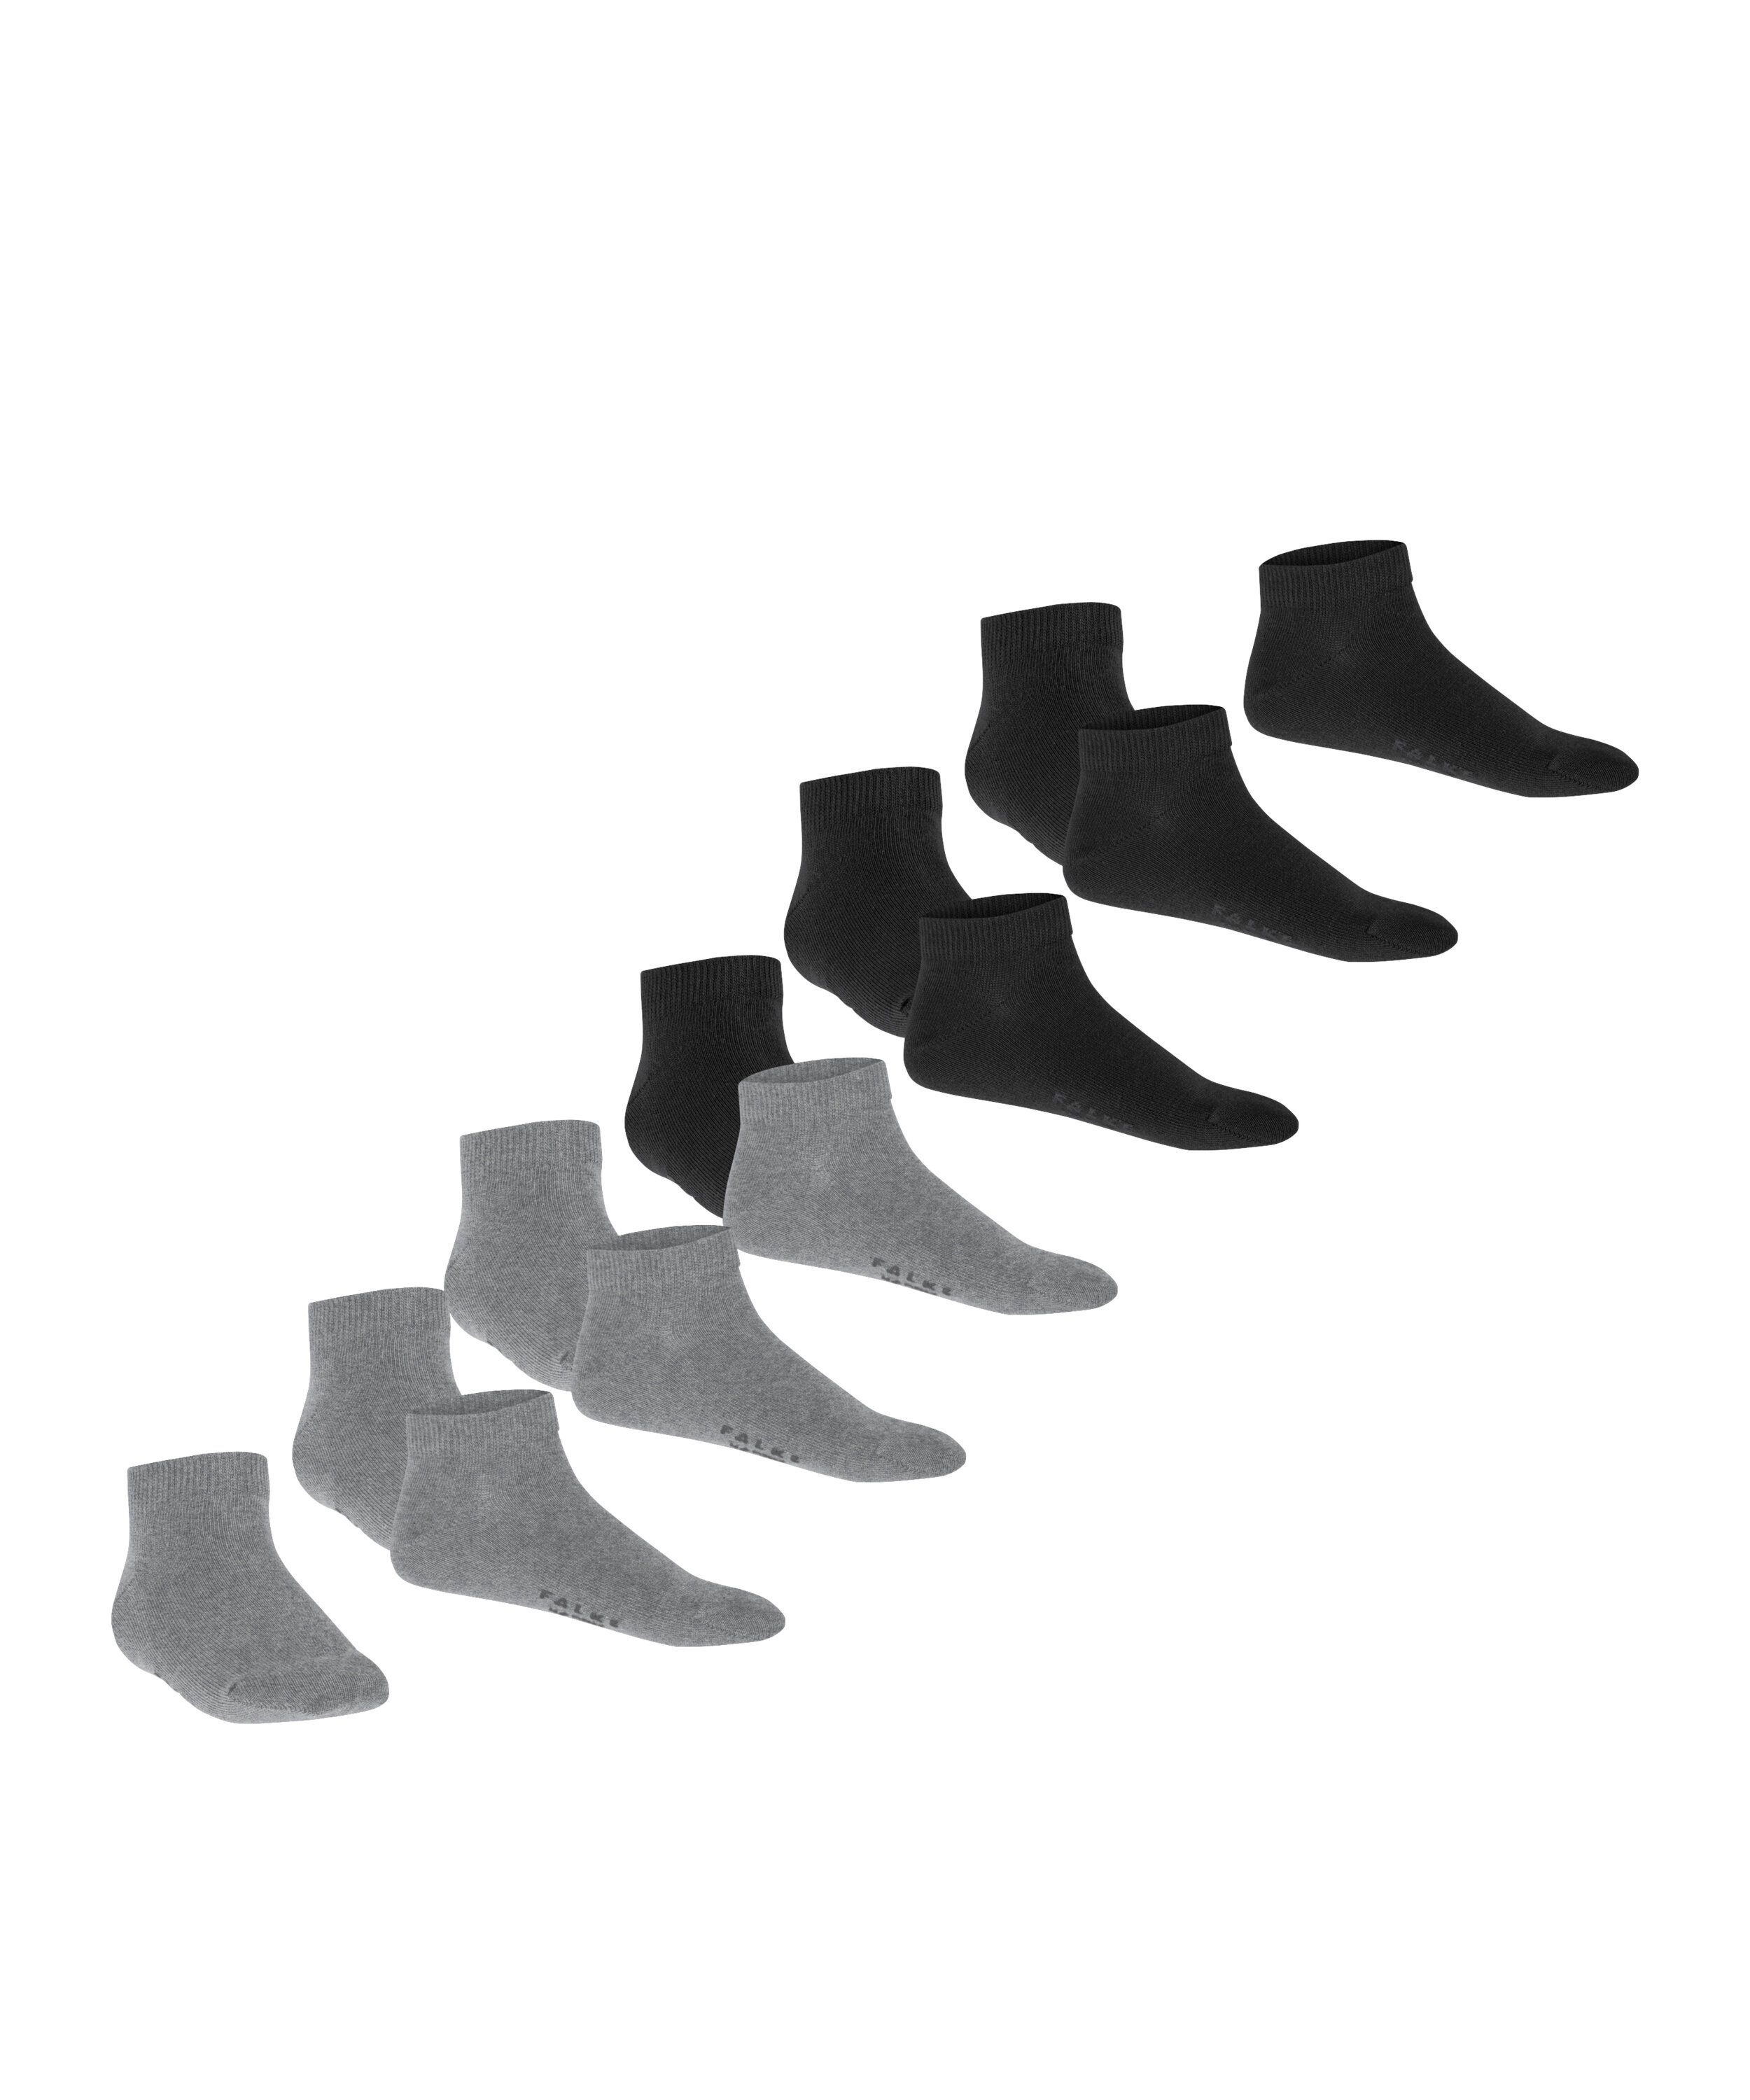 (0050) aus 6 Paar Sneakersocken sortiment 6-Pack FALKE Happy Baumwollsneakern Set (6-Paar)